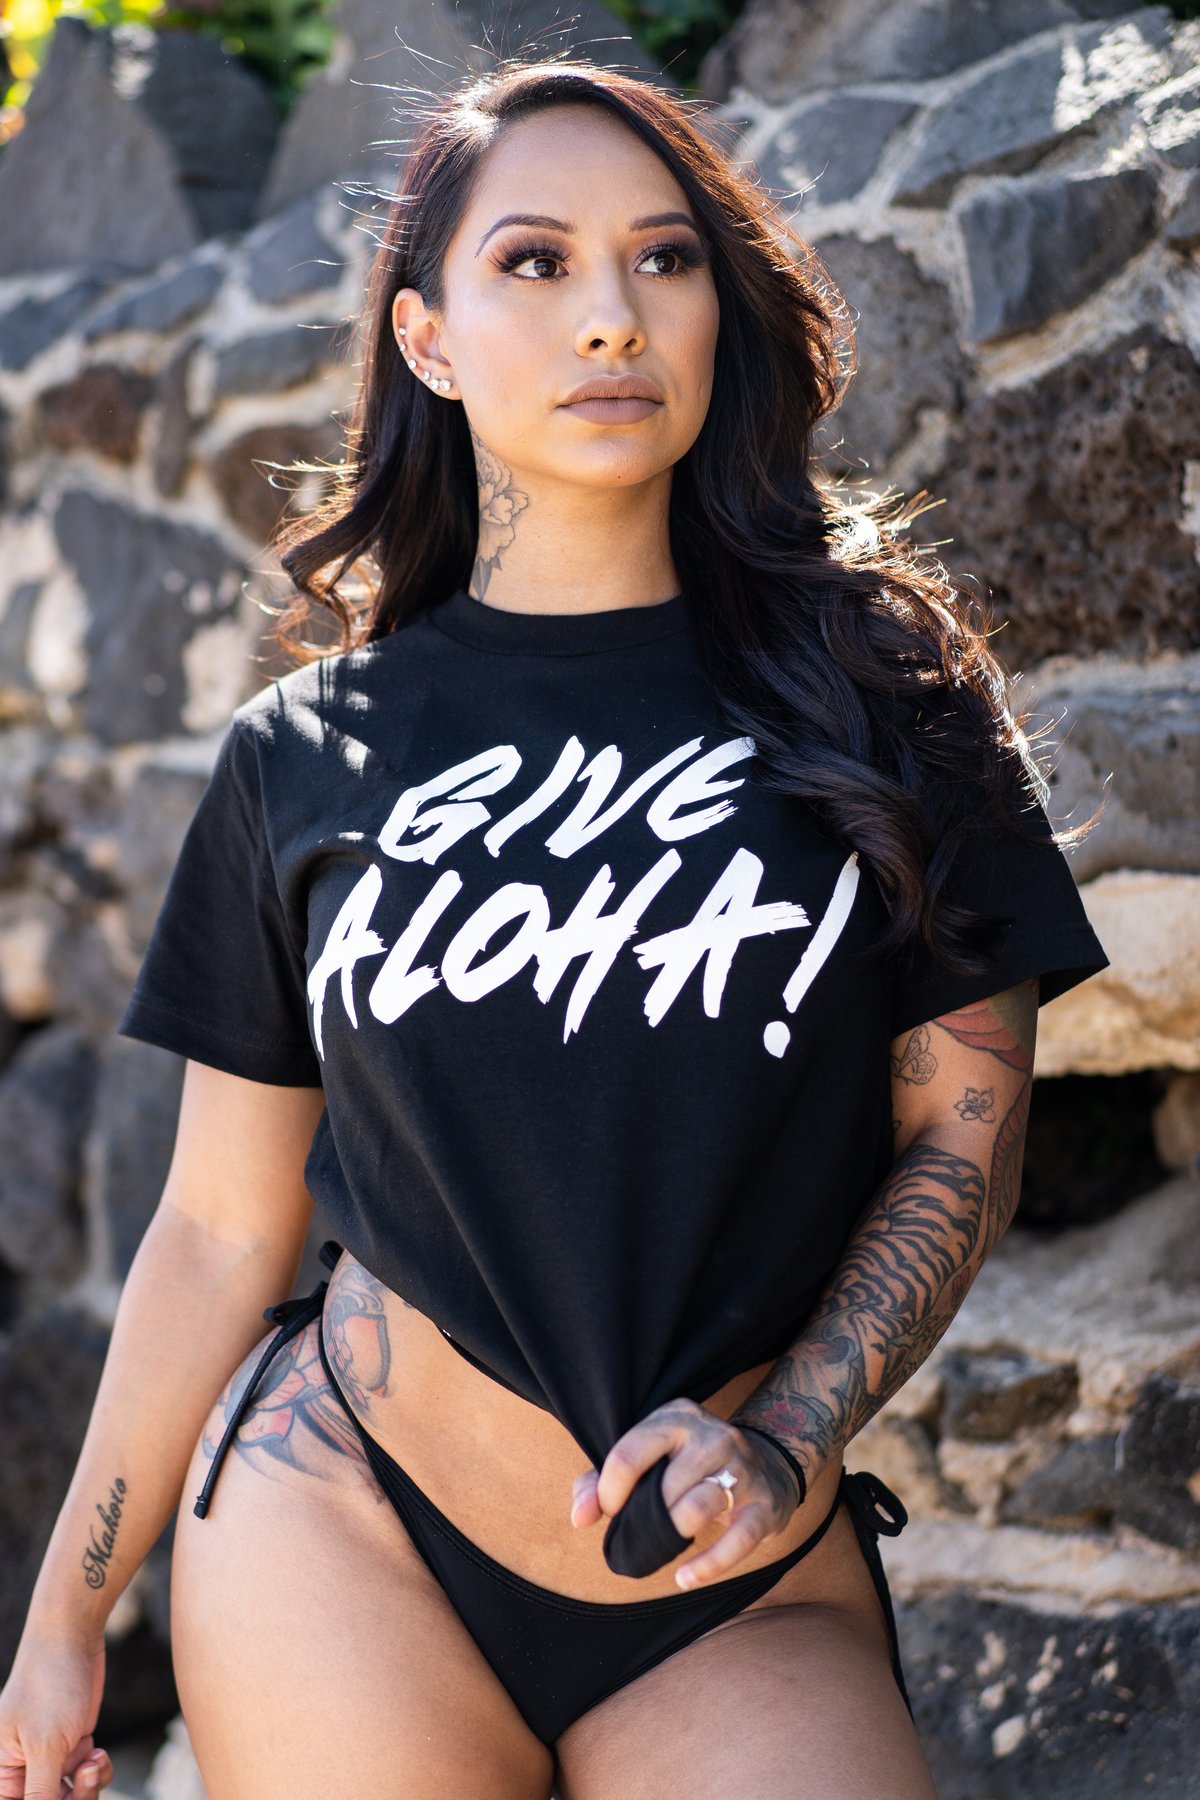 Give Aloha! T-shirt (Black)